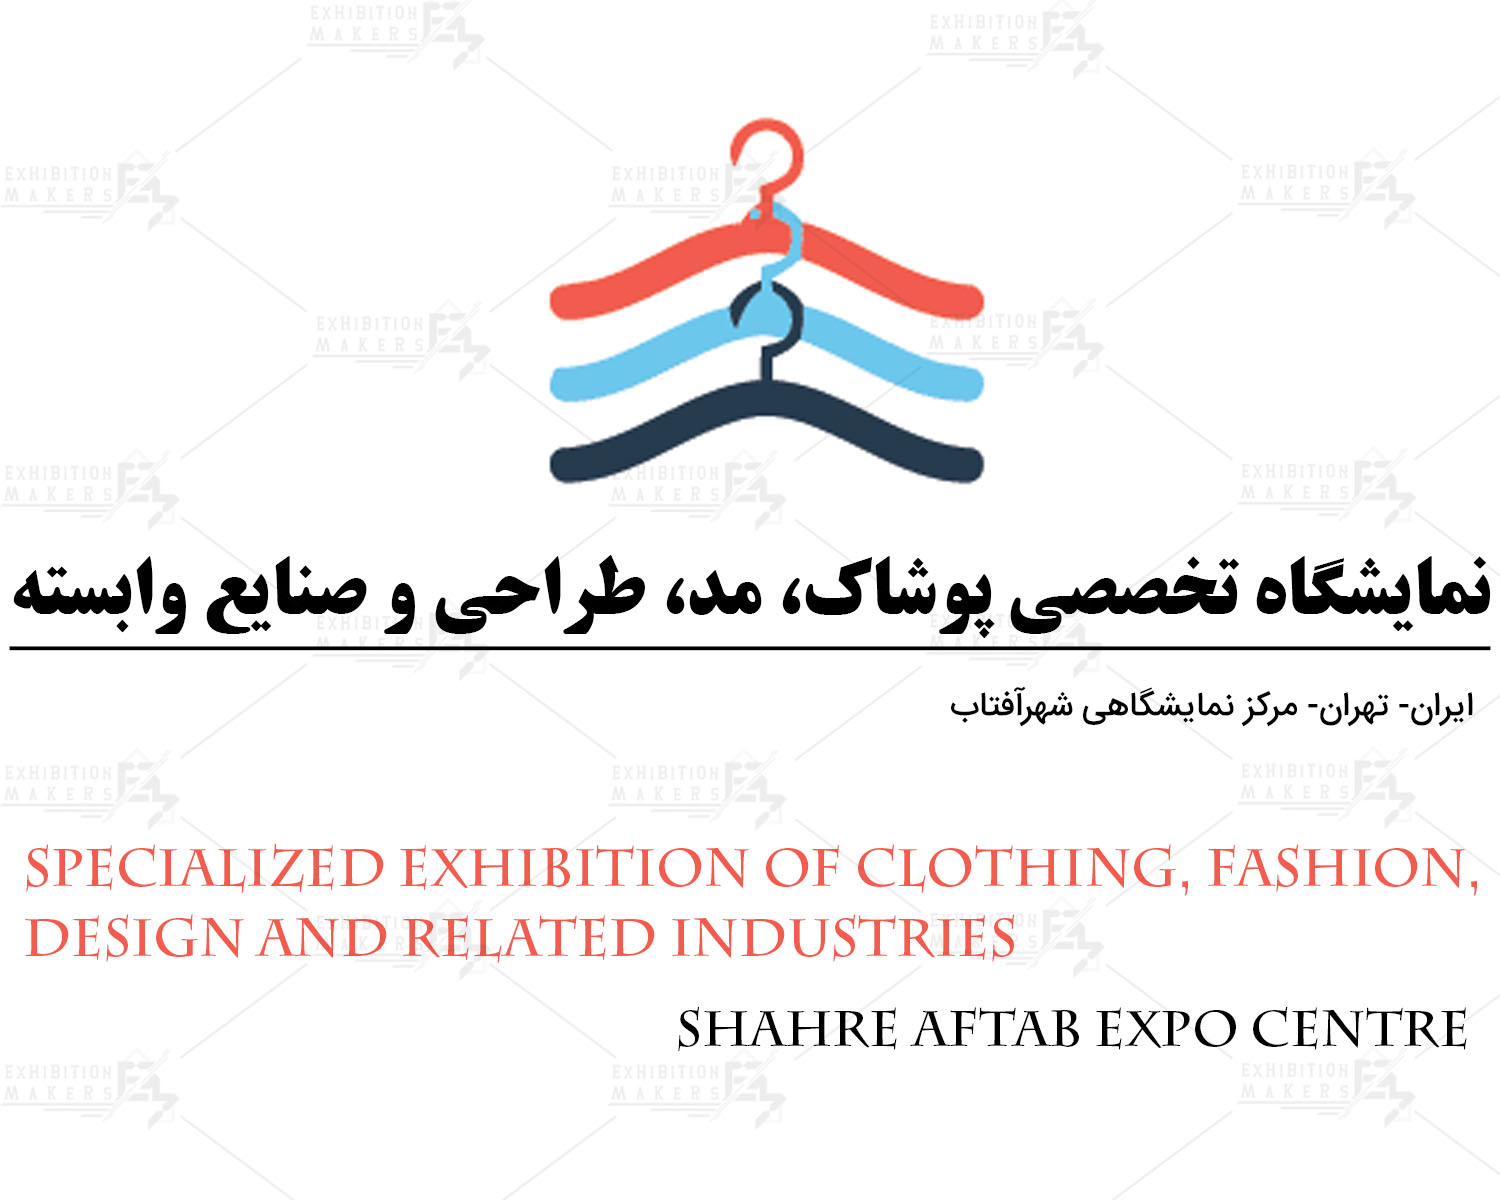 نمایشگاه تخصصی پوشاک، مد، طراحی و صنایع وابسته ایران تهران